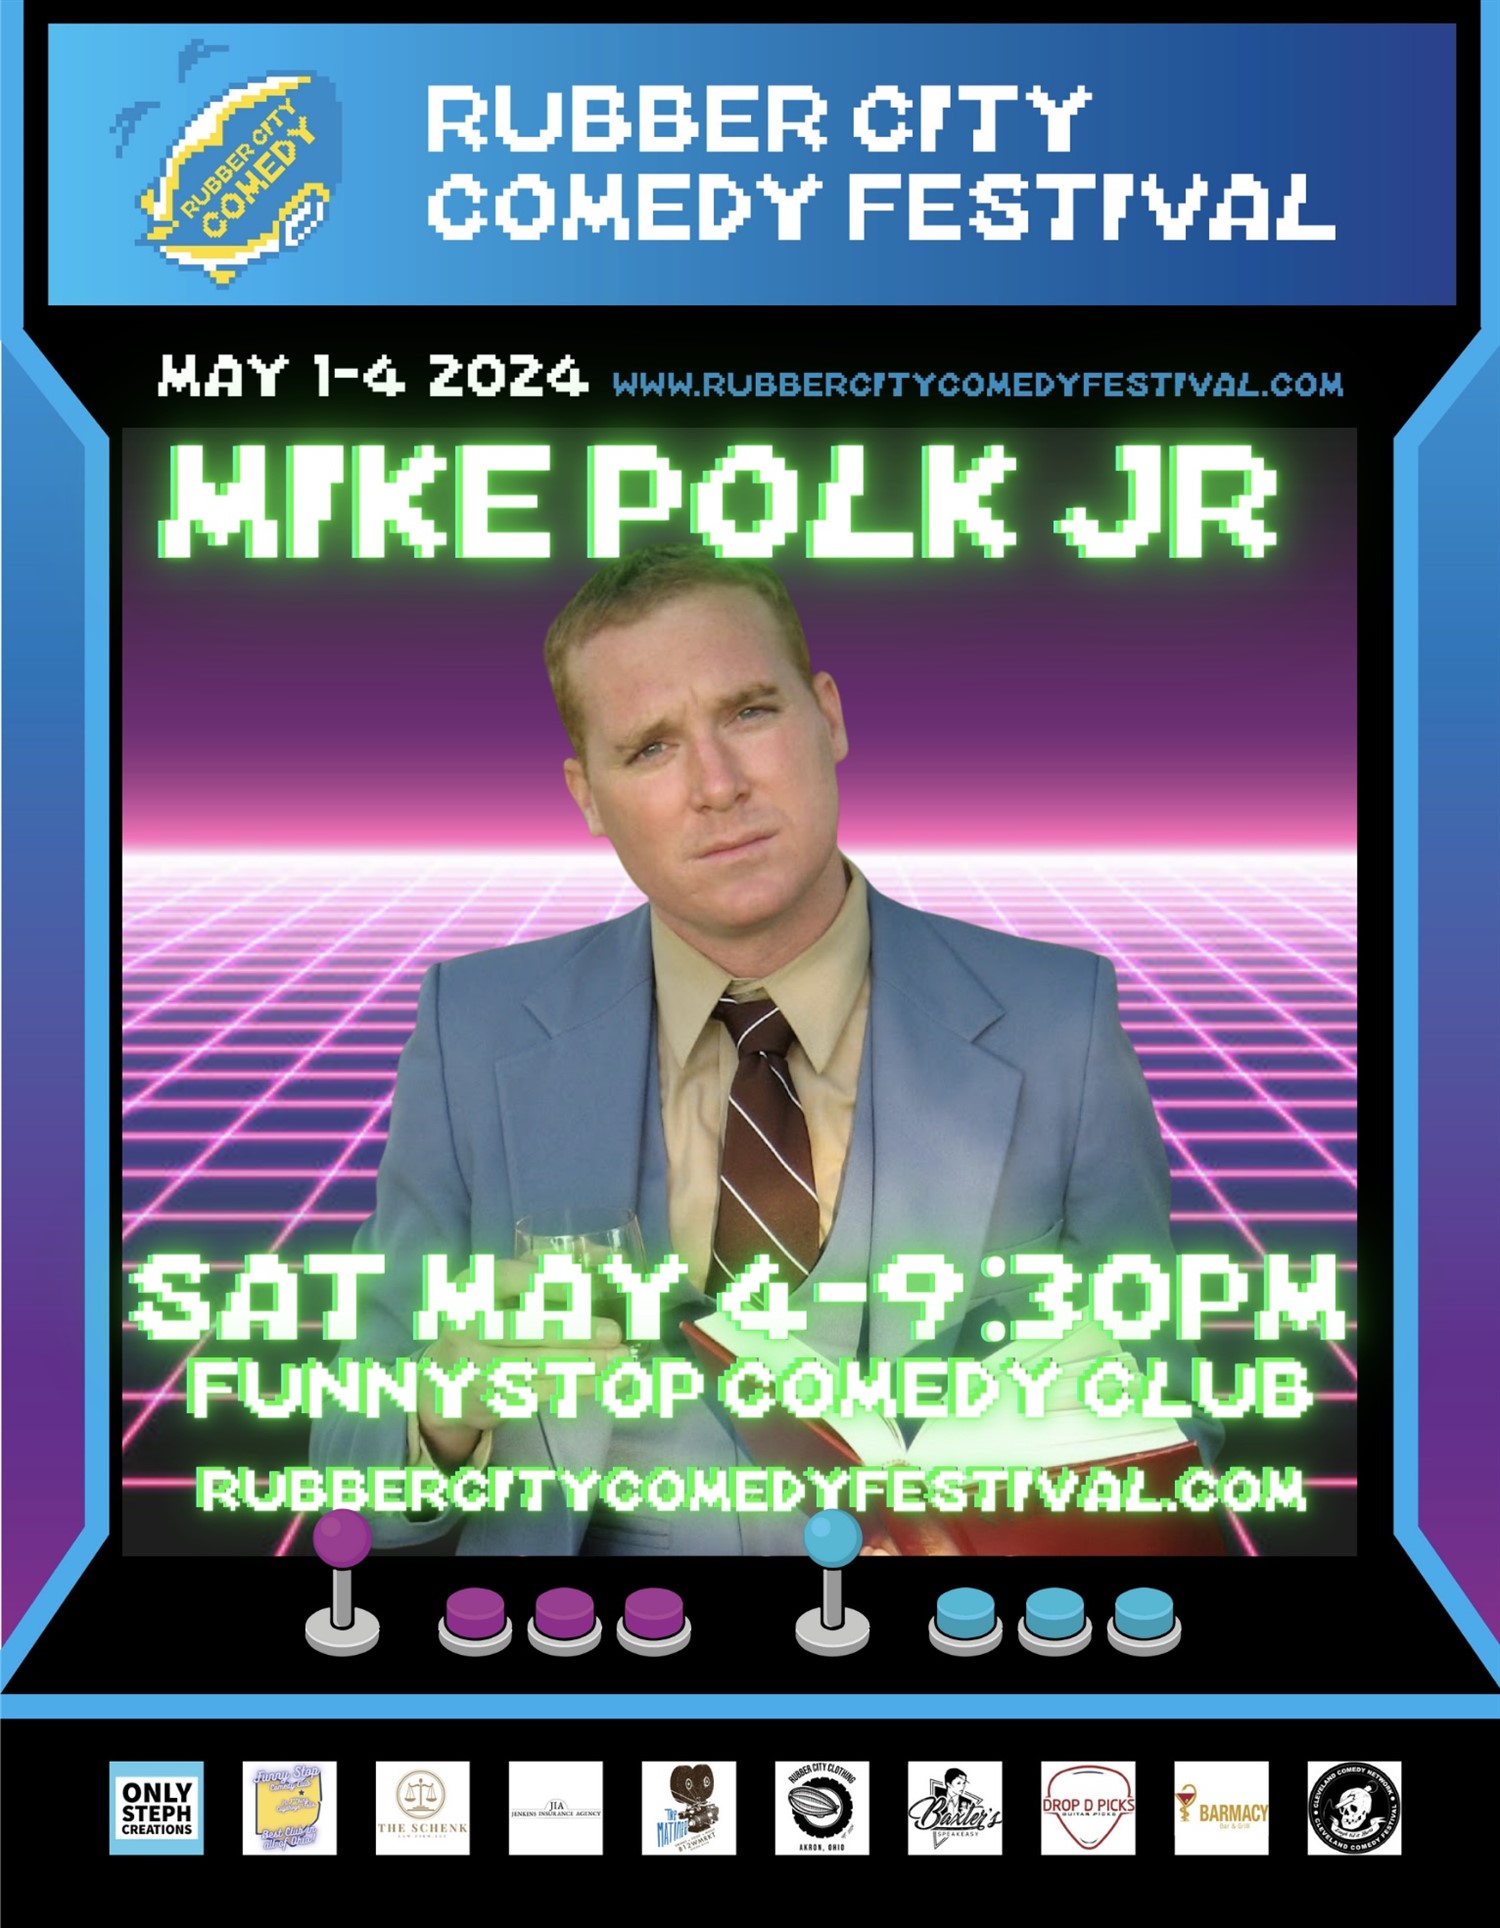 Mike Polk Jr. | 9:30 PM | Rubber City Comedy Festival Funny Stop Comedy Club on mai 04, 21:30@Funny Stop Comedy Club - Achetez des billets et obtenez des informations surFunny Stop funnystop.online